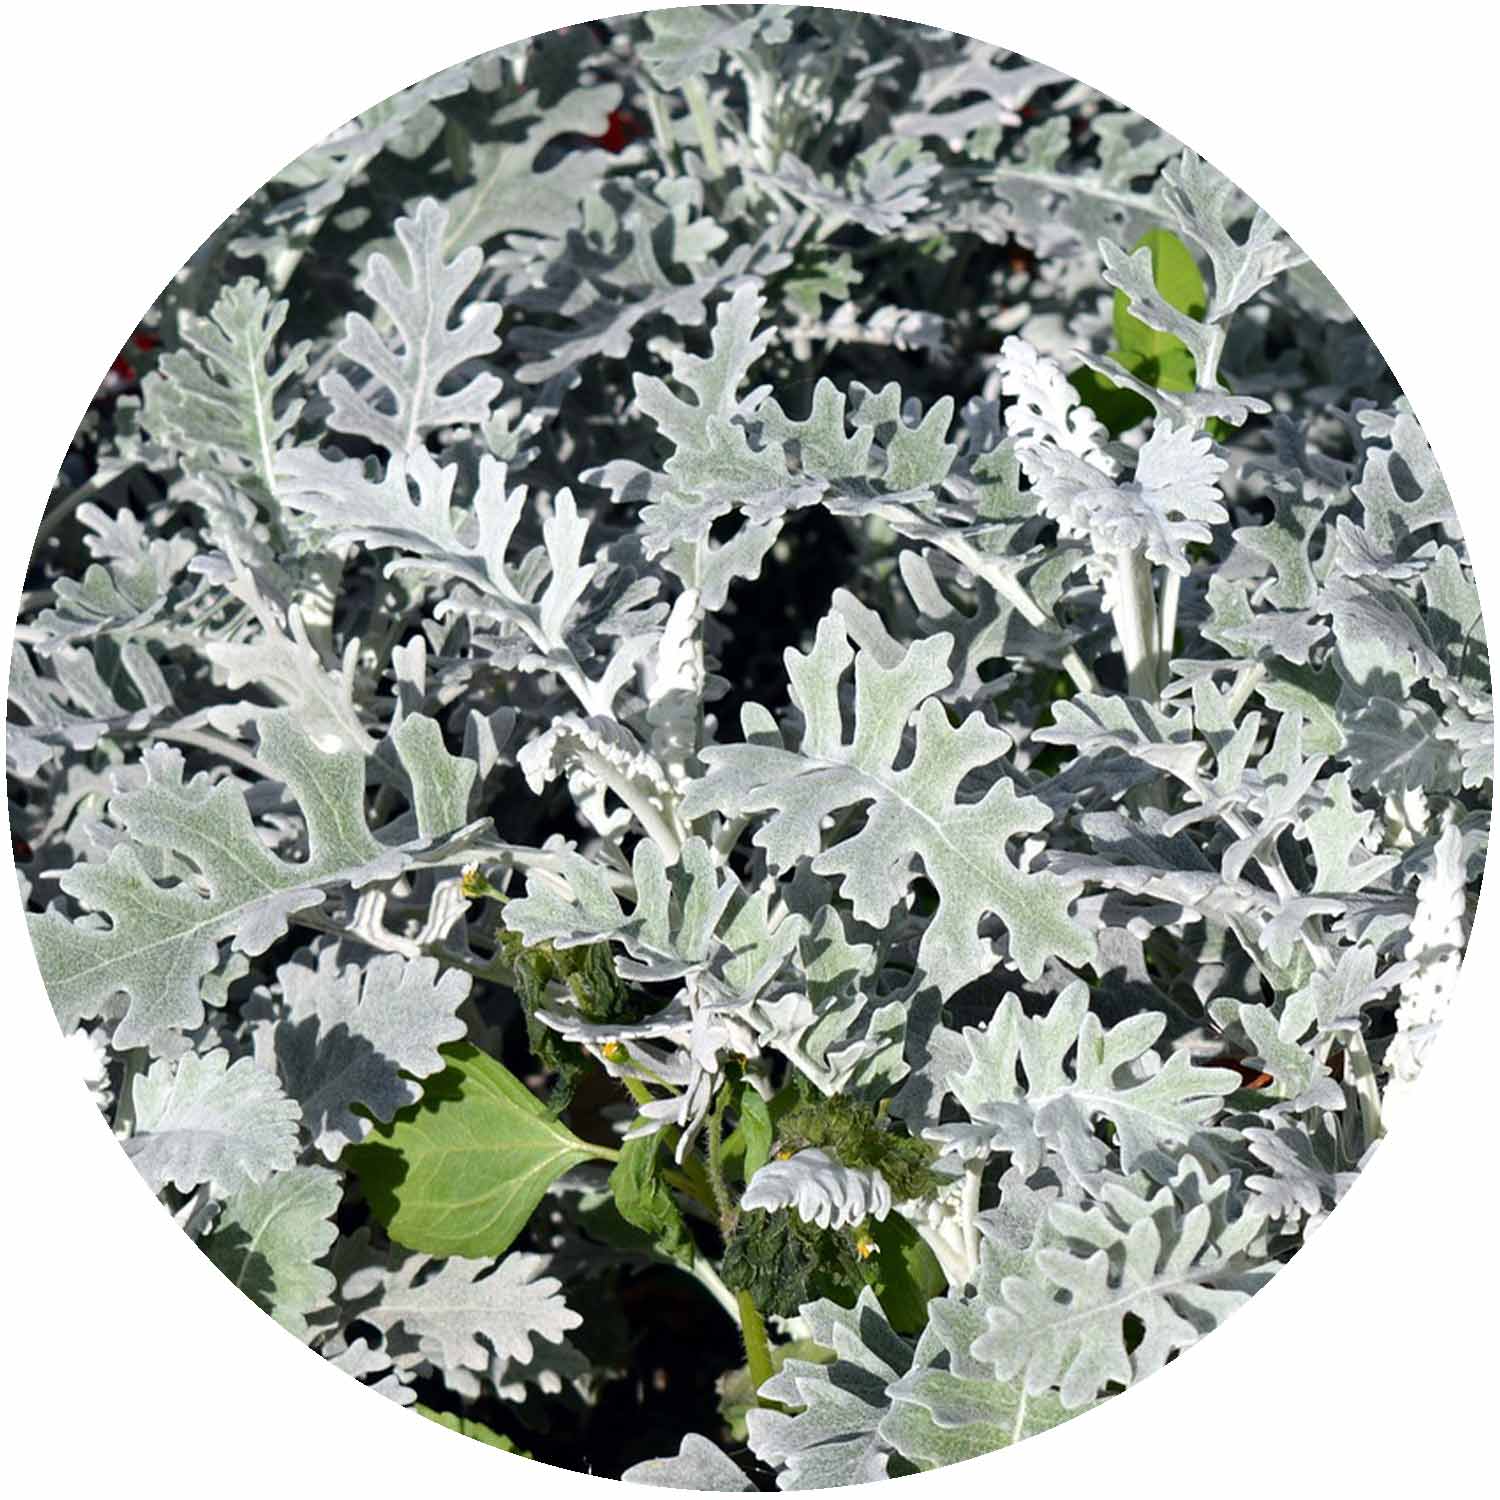 (E) Silver leaf